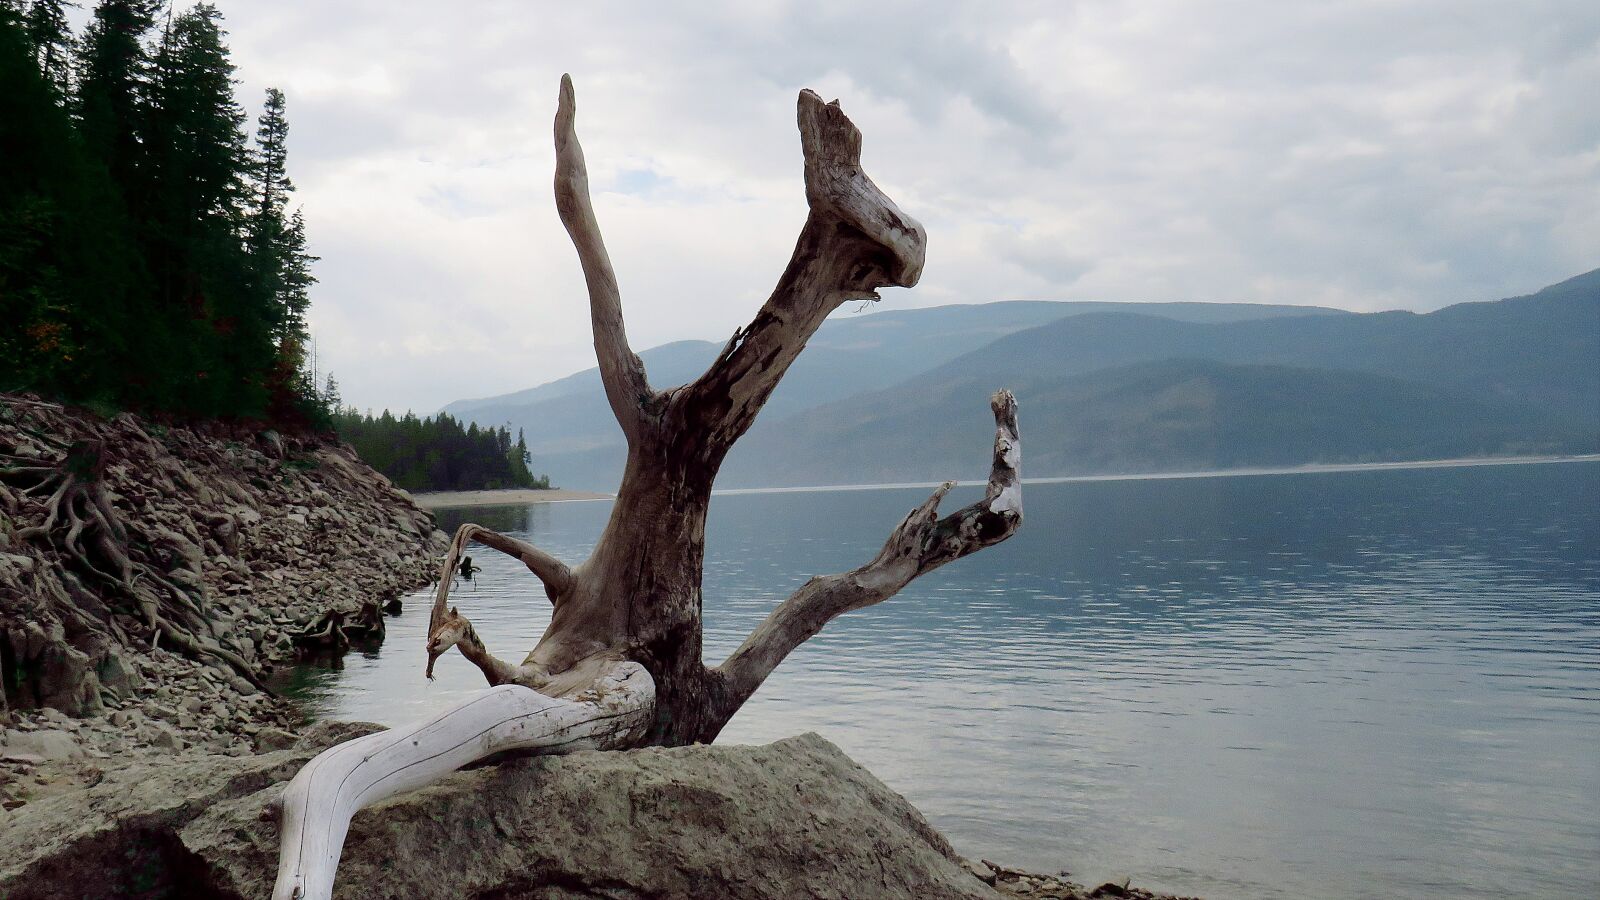 Canon PowerShot SX540 HS sample photo. Nature, landscape, sculpture photography